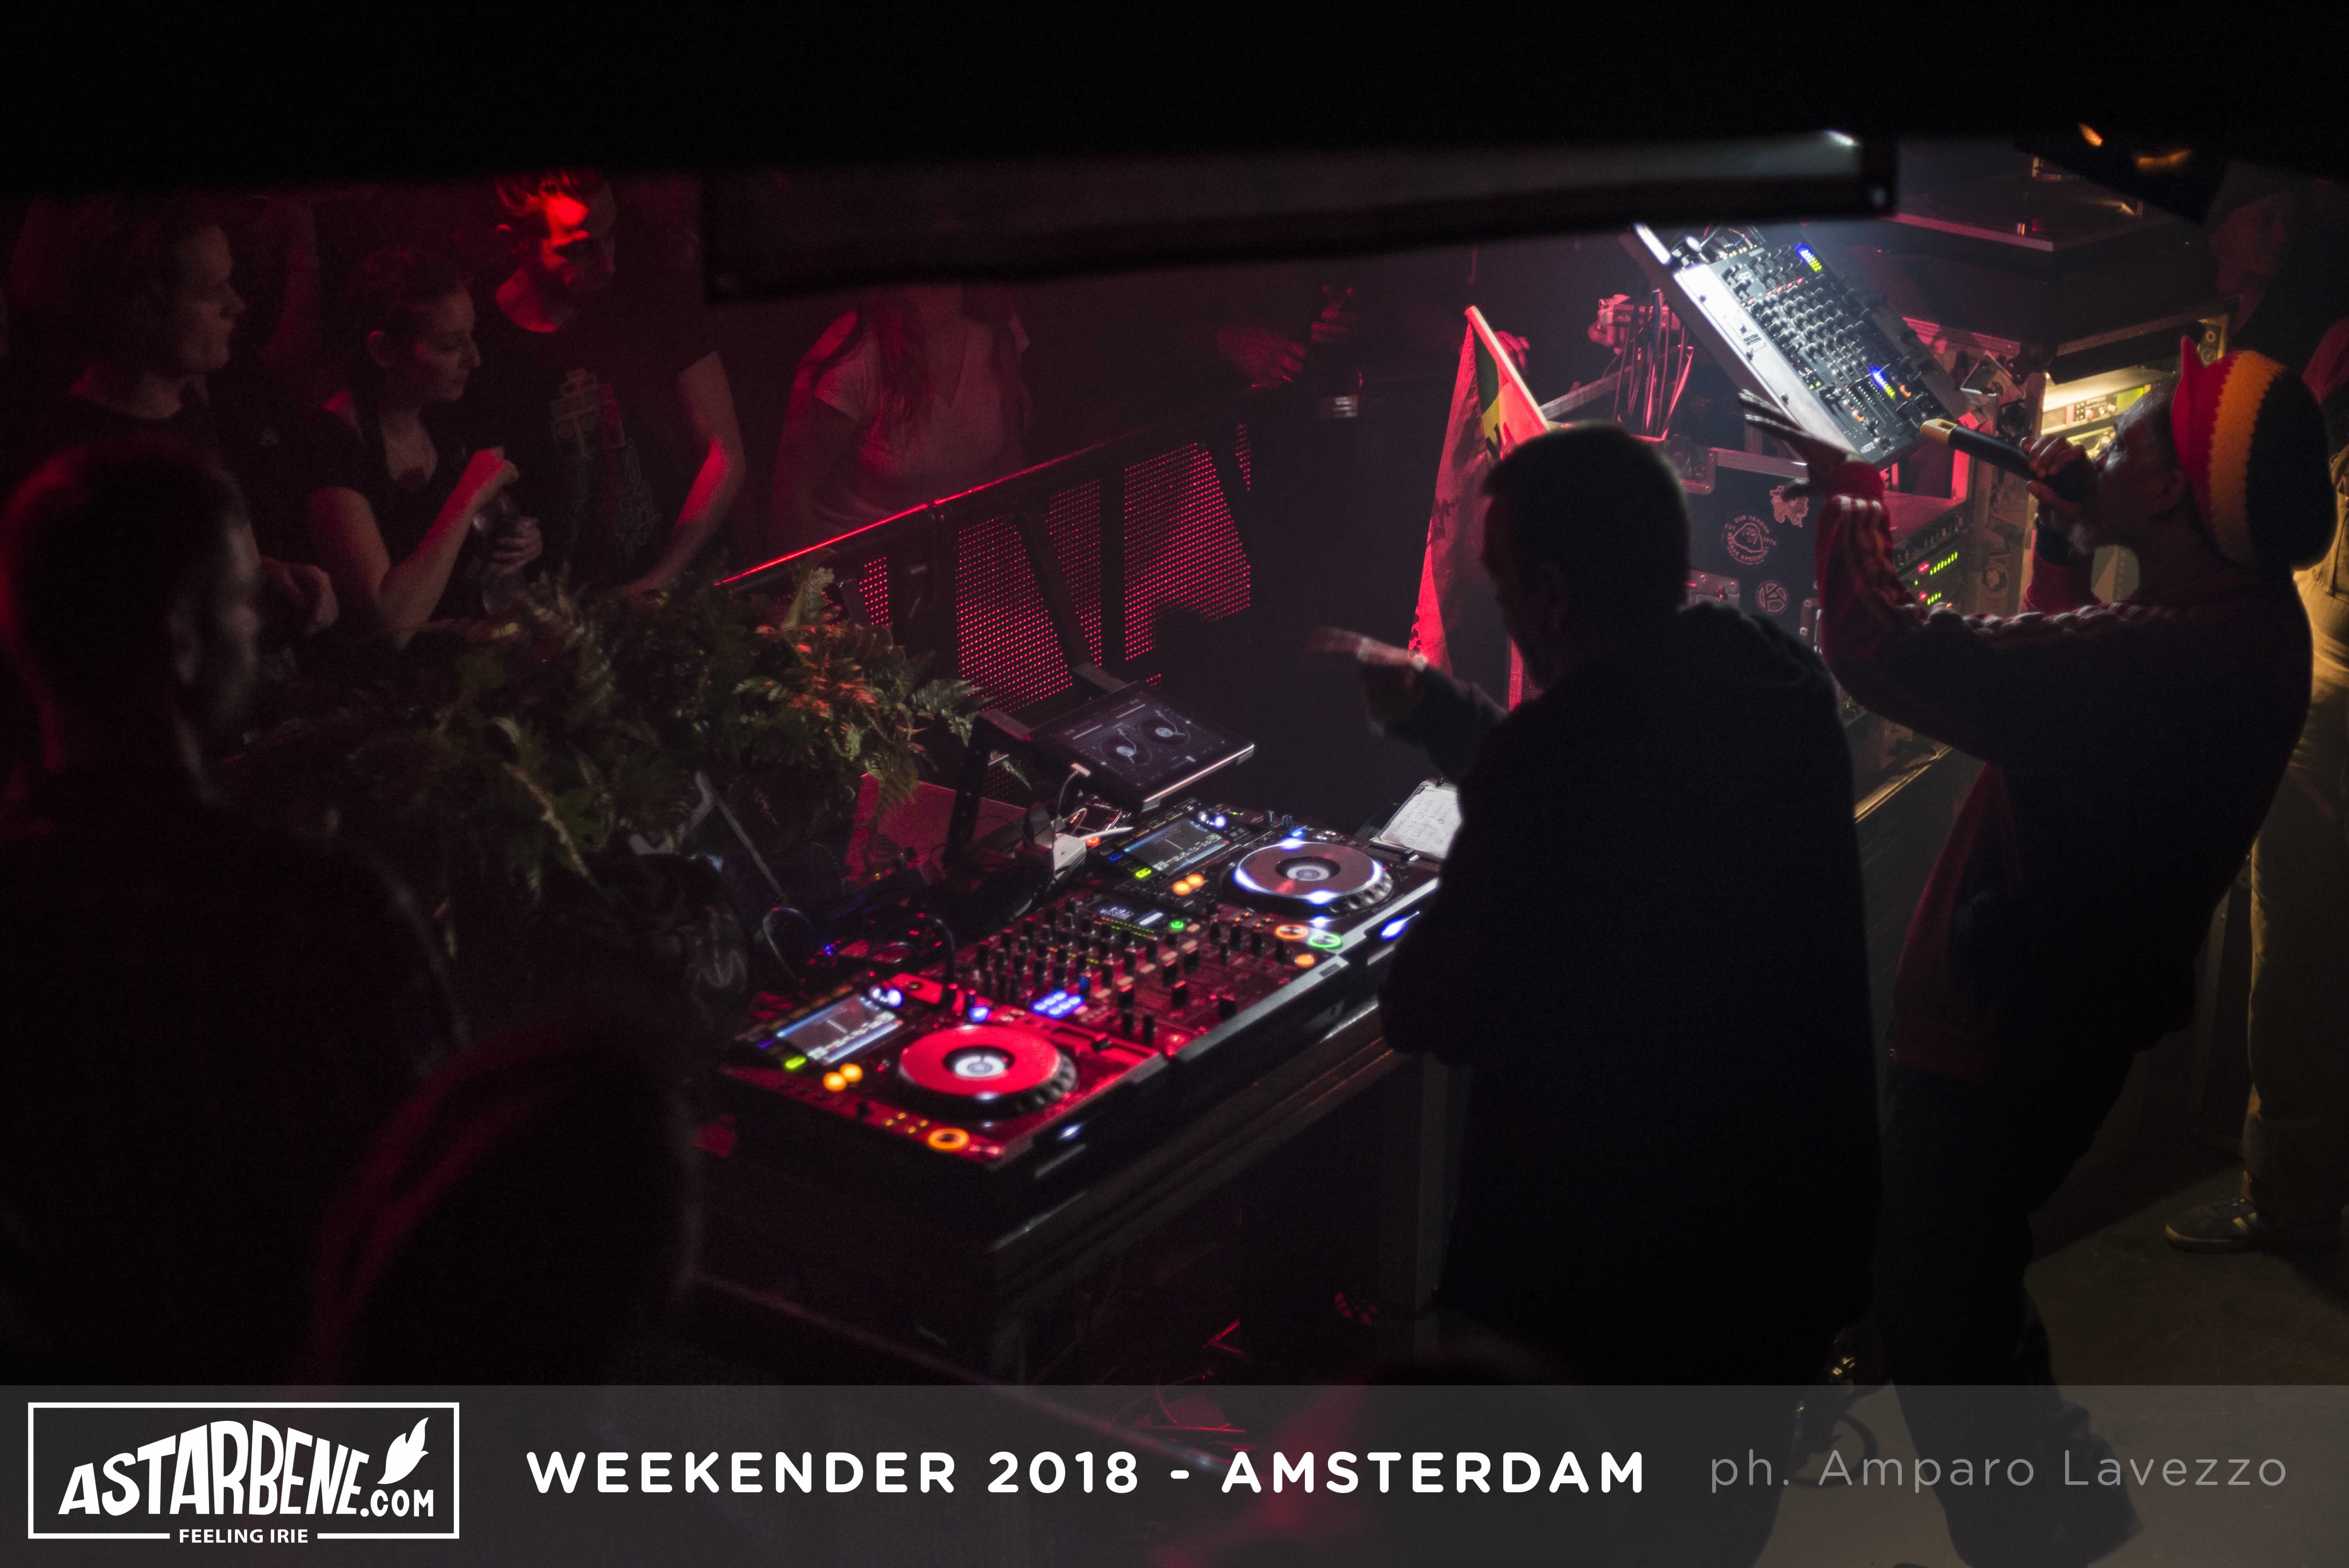 Amsterdam sound system Weekender 2018